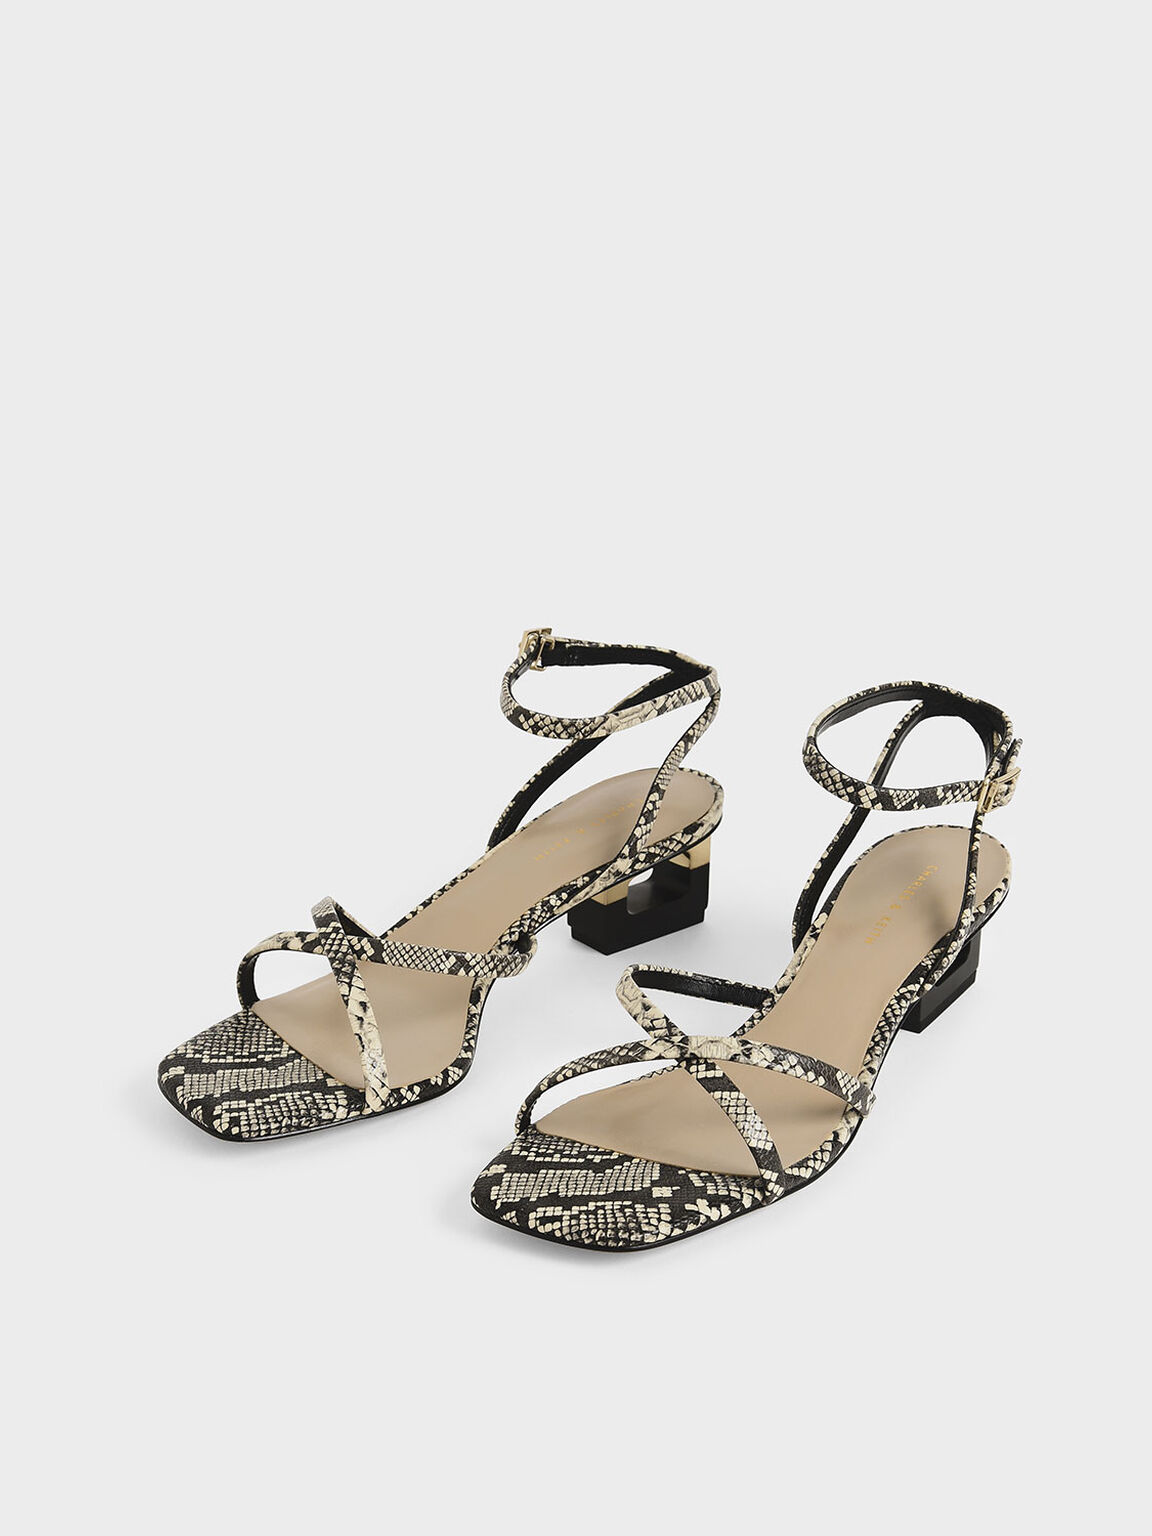 Snake Print Sculptural Chrome Heel Sandals, Multi, hi-res